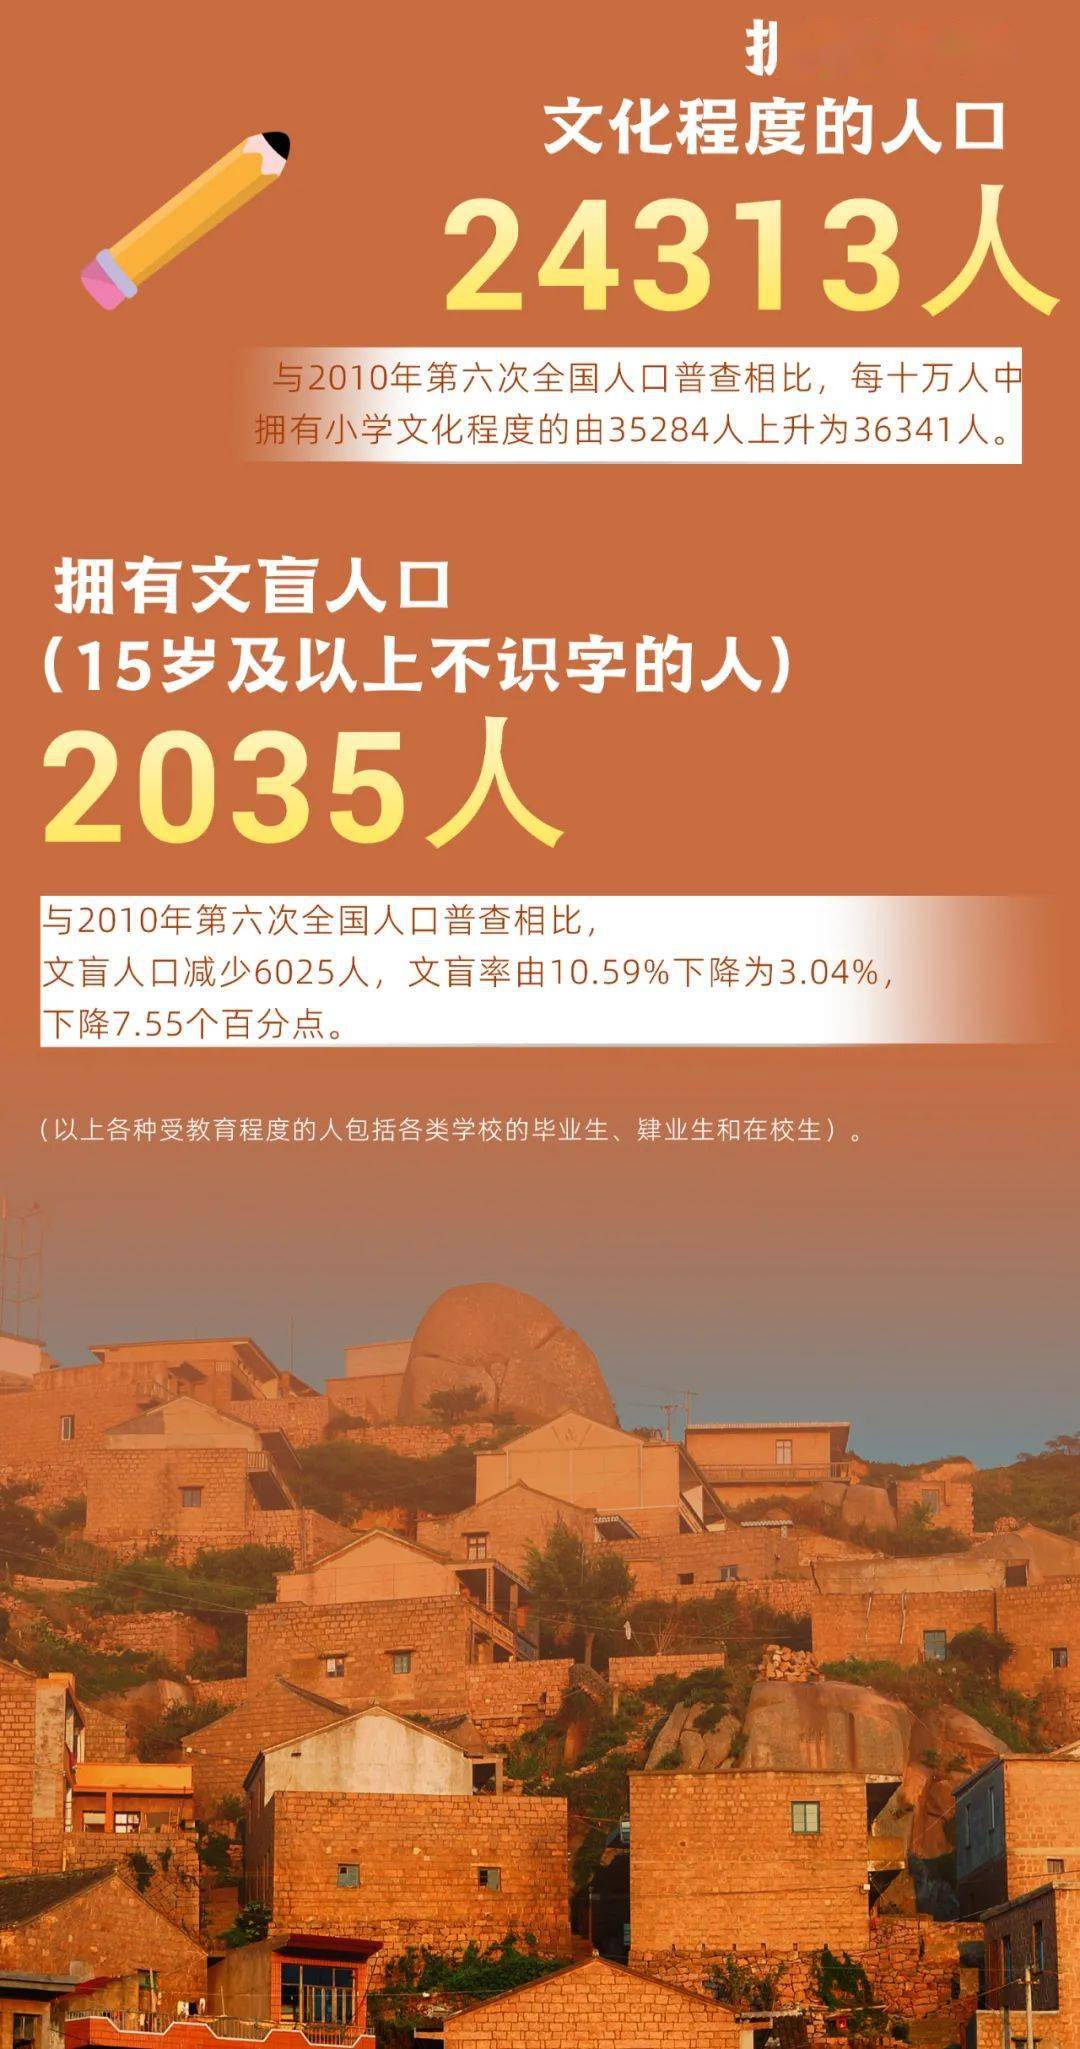 嵊泗县人口图片